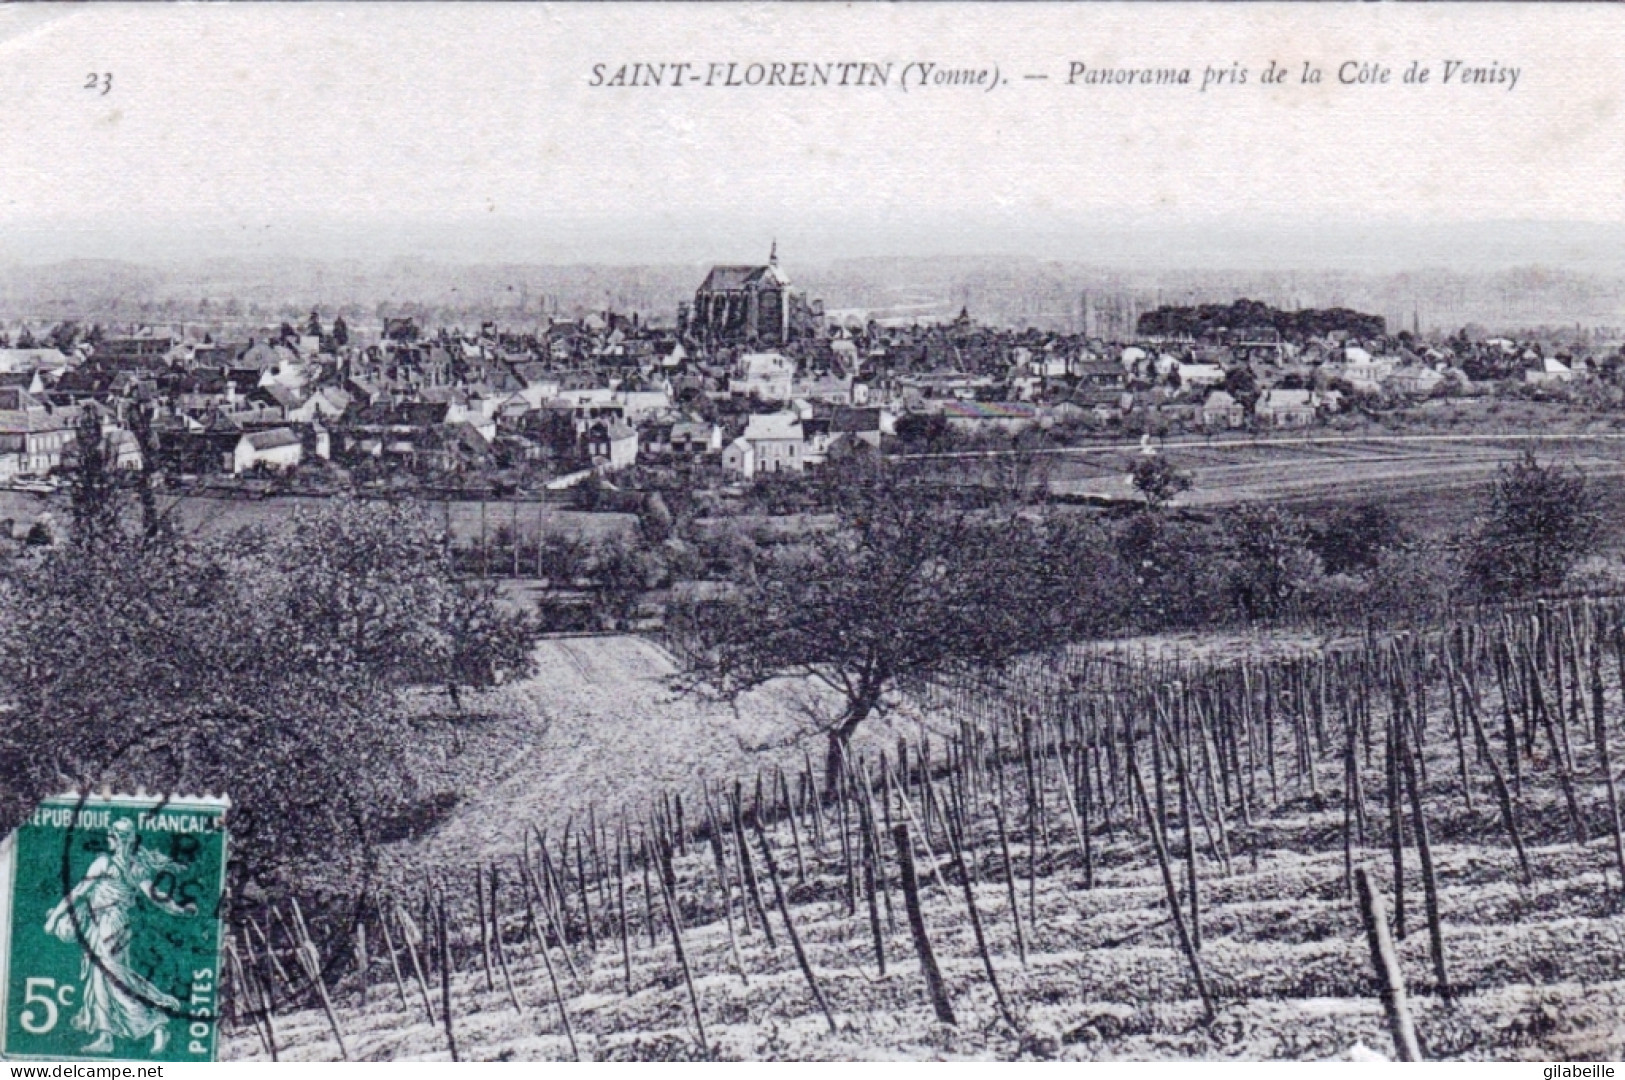 89 - Yonne - SAINT FLORENTIN - Panorama Pris De La Cote De Venisy - Saint Florentin